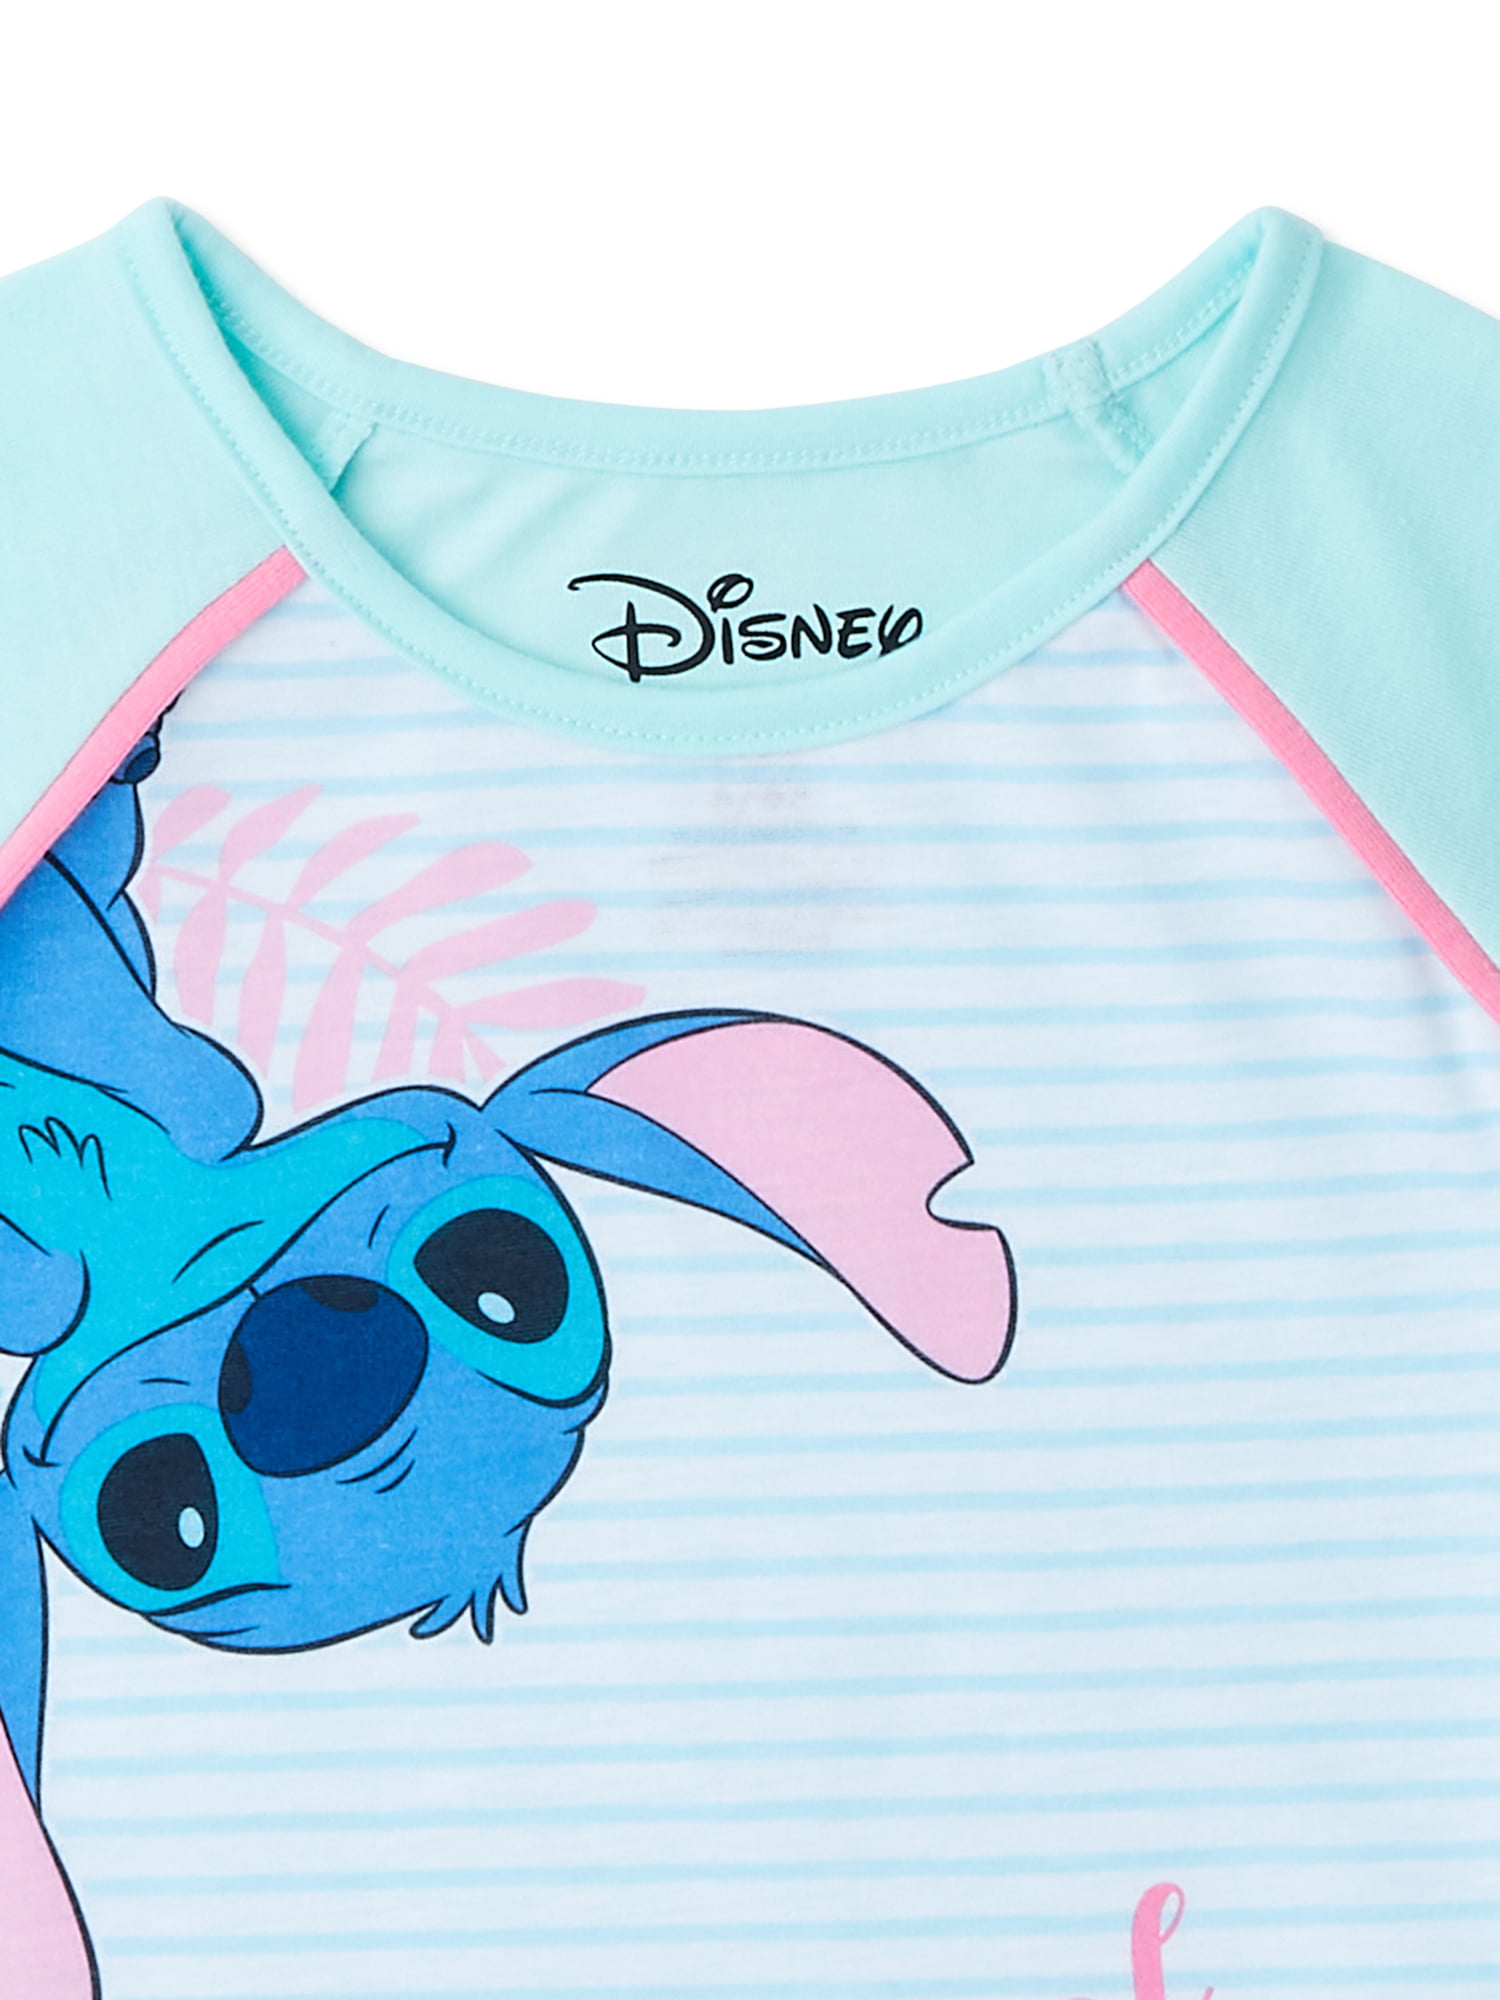 Disney Lilo & Stitch Girls Short Sleeve Top & Shorts Pajamas, 2 Pc Set,  Sizes 4-12 